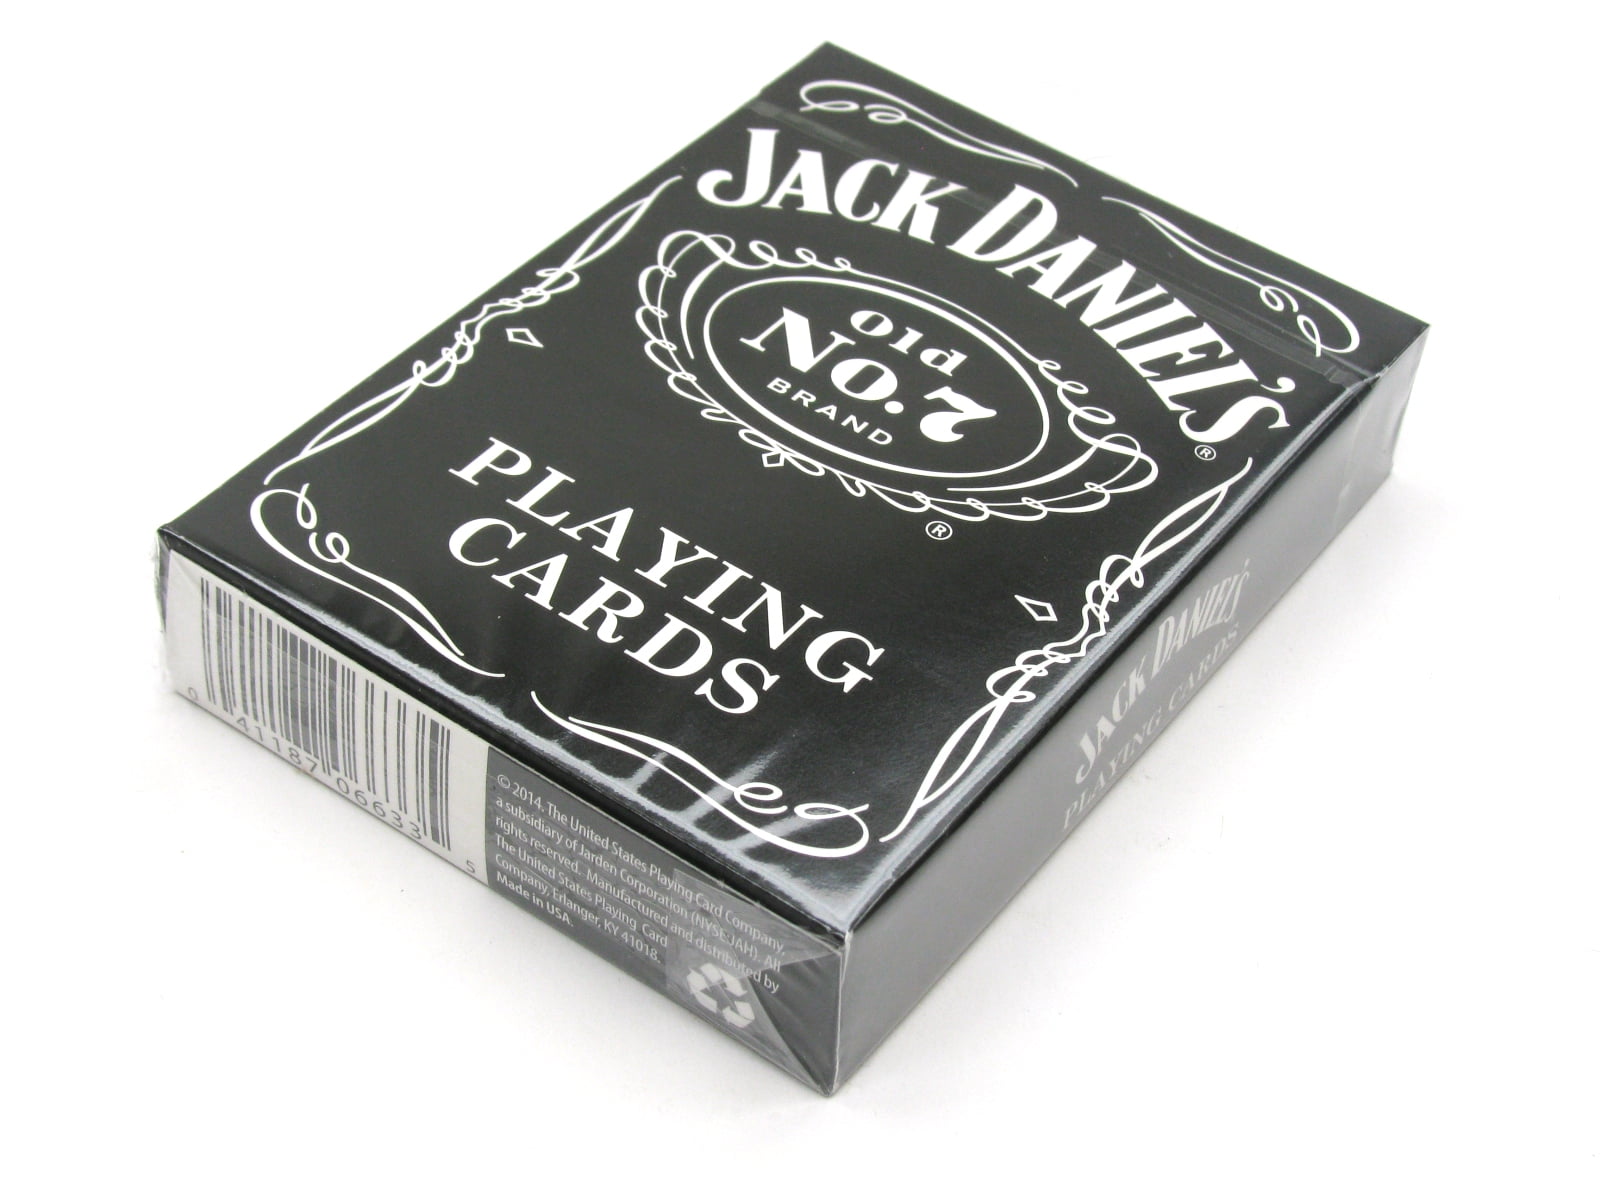 Near mint. Карты Jack Daniels. Игральные карты Джек Дэниэлс. Карты для покера Jack Daniels. Jack Daniels Покер.